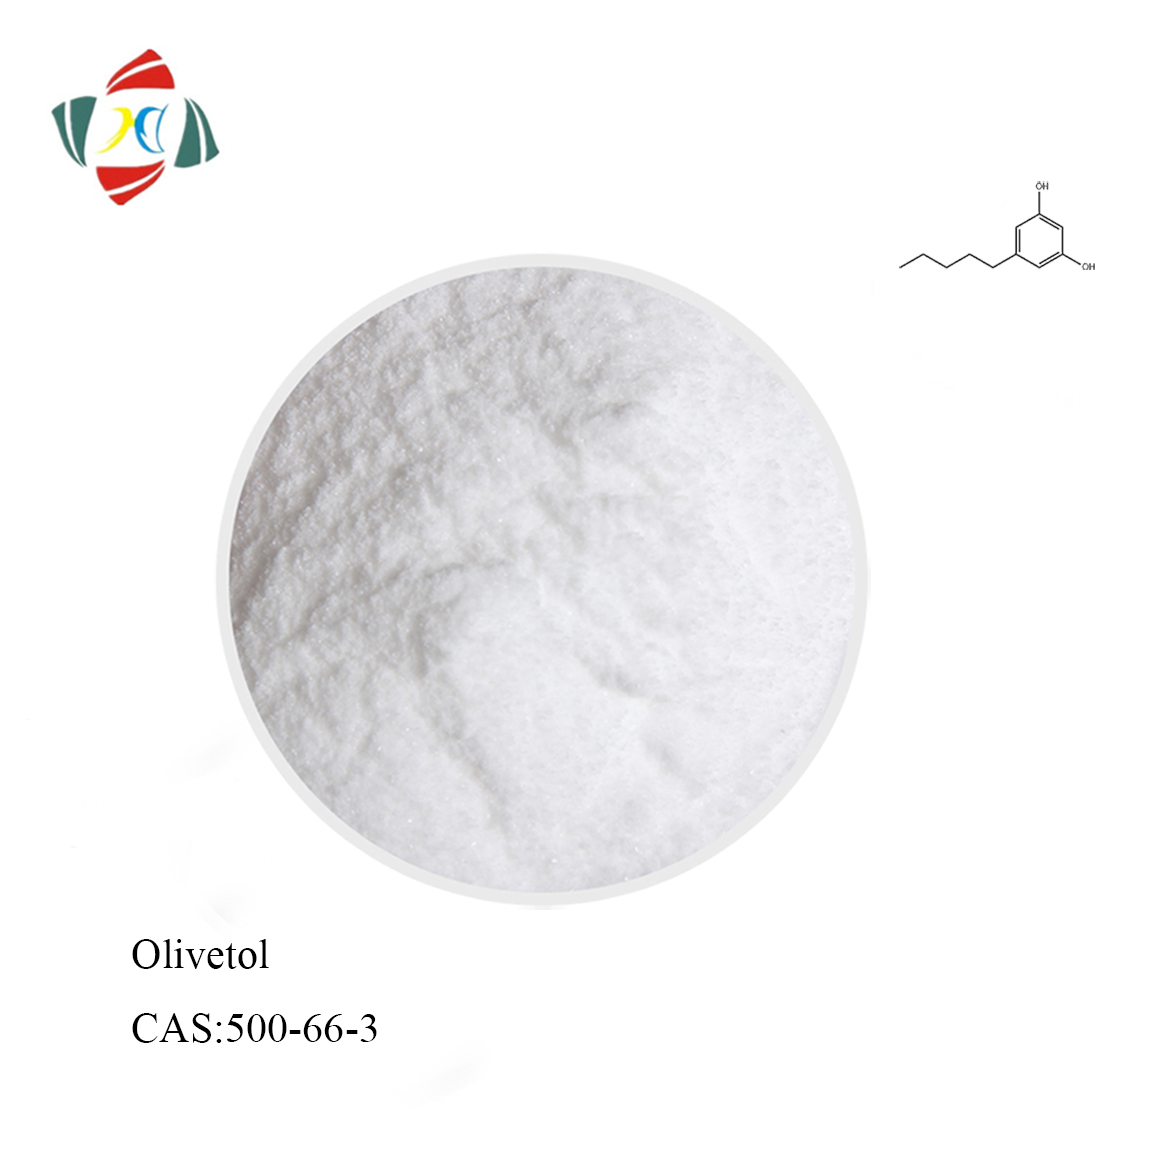 Hochwertiges Olivetol CAS 500-66-3